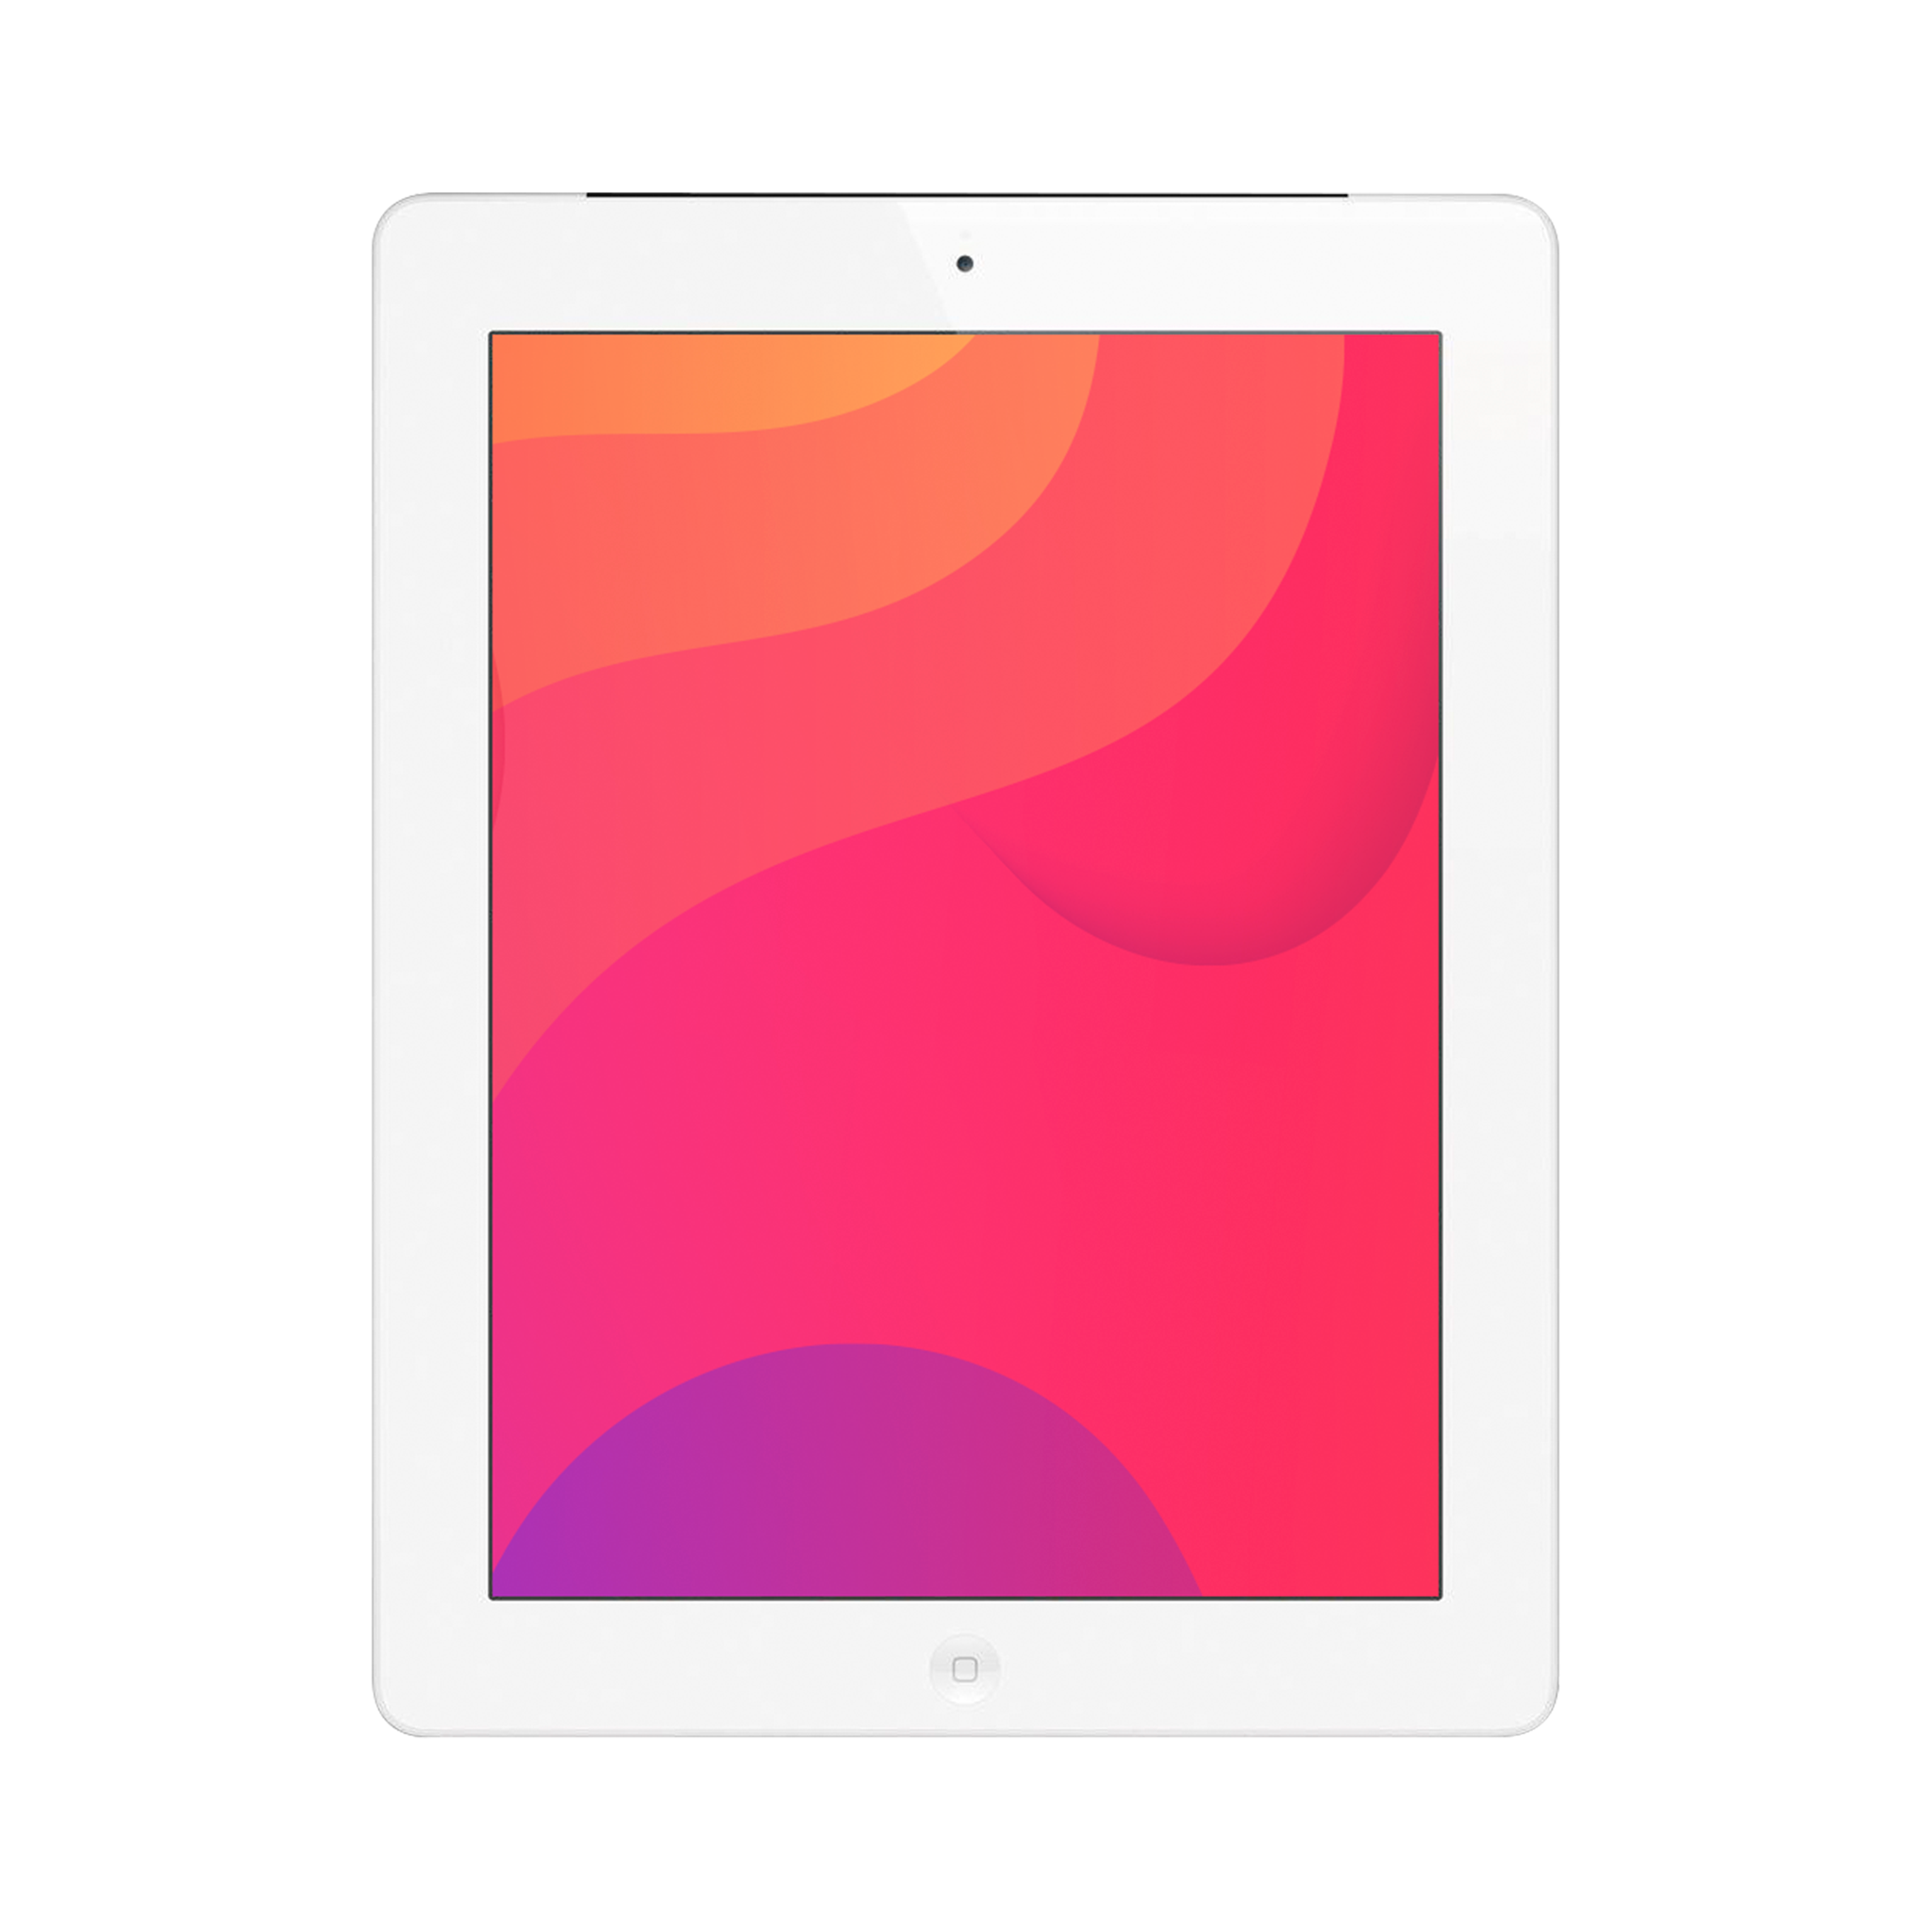 Apple iPad 2 (Wi-Fi Only) 16GB Silver